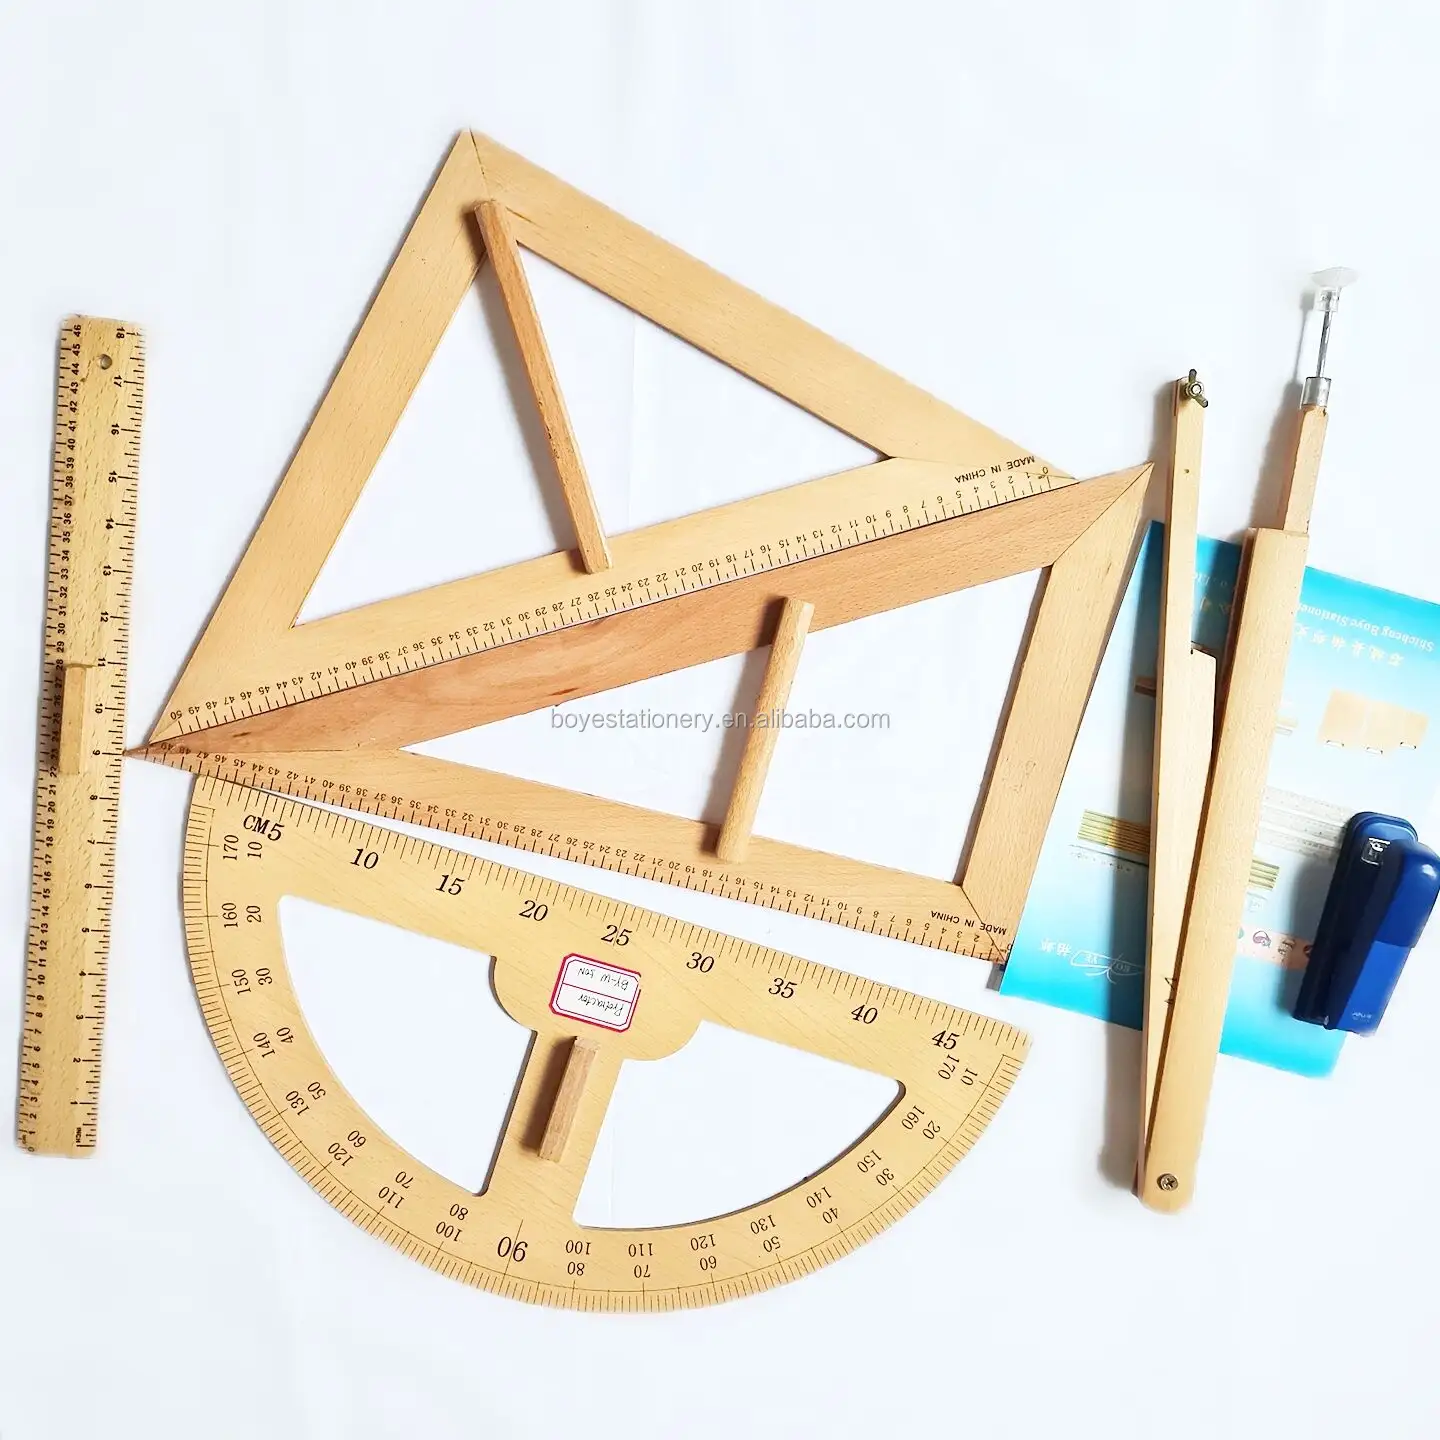 ชุดเครื่องเขียนสำหรับโรงเรียนไม้แบบสามเหลี่ยม,ชุดไม้บรรทัดเรขาคณิตเครื่องมือไม้บรรทัดไม้สำหรับการสอนในโรงเรียน